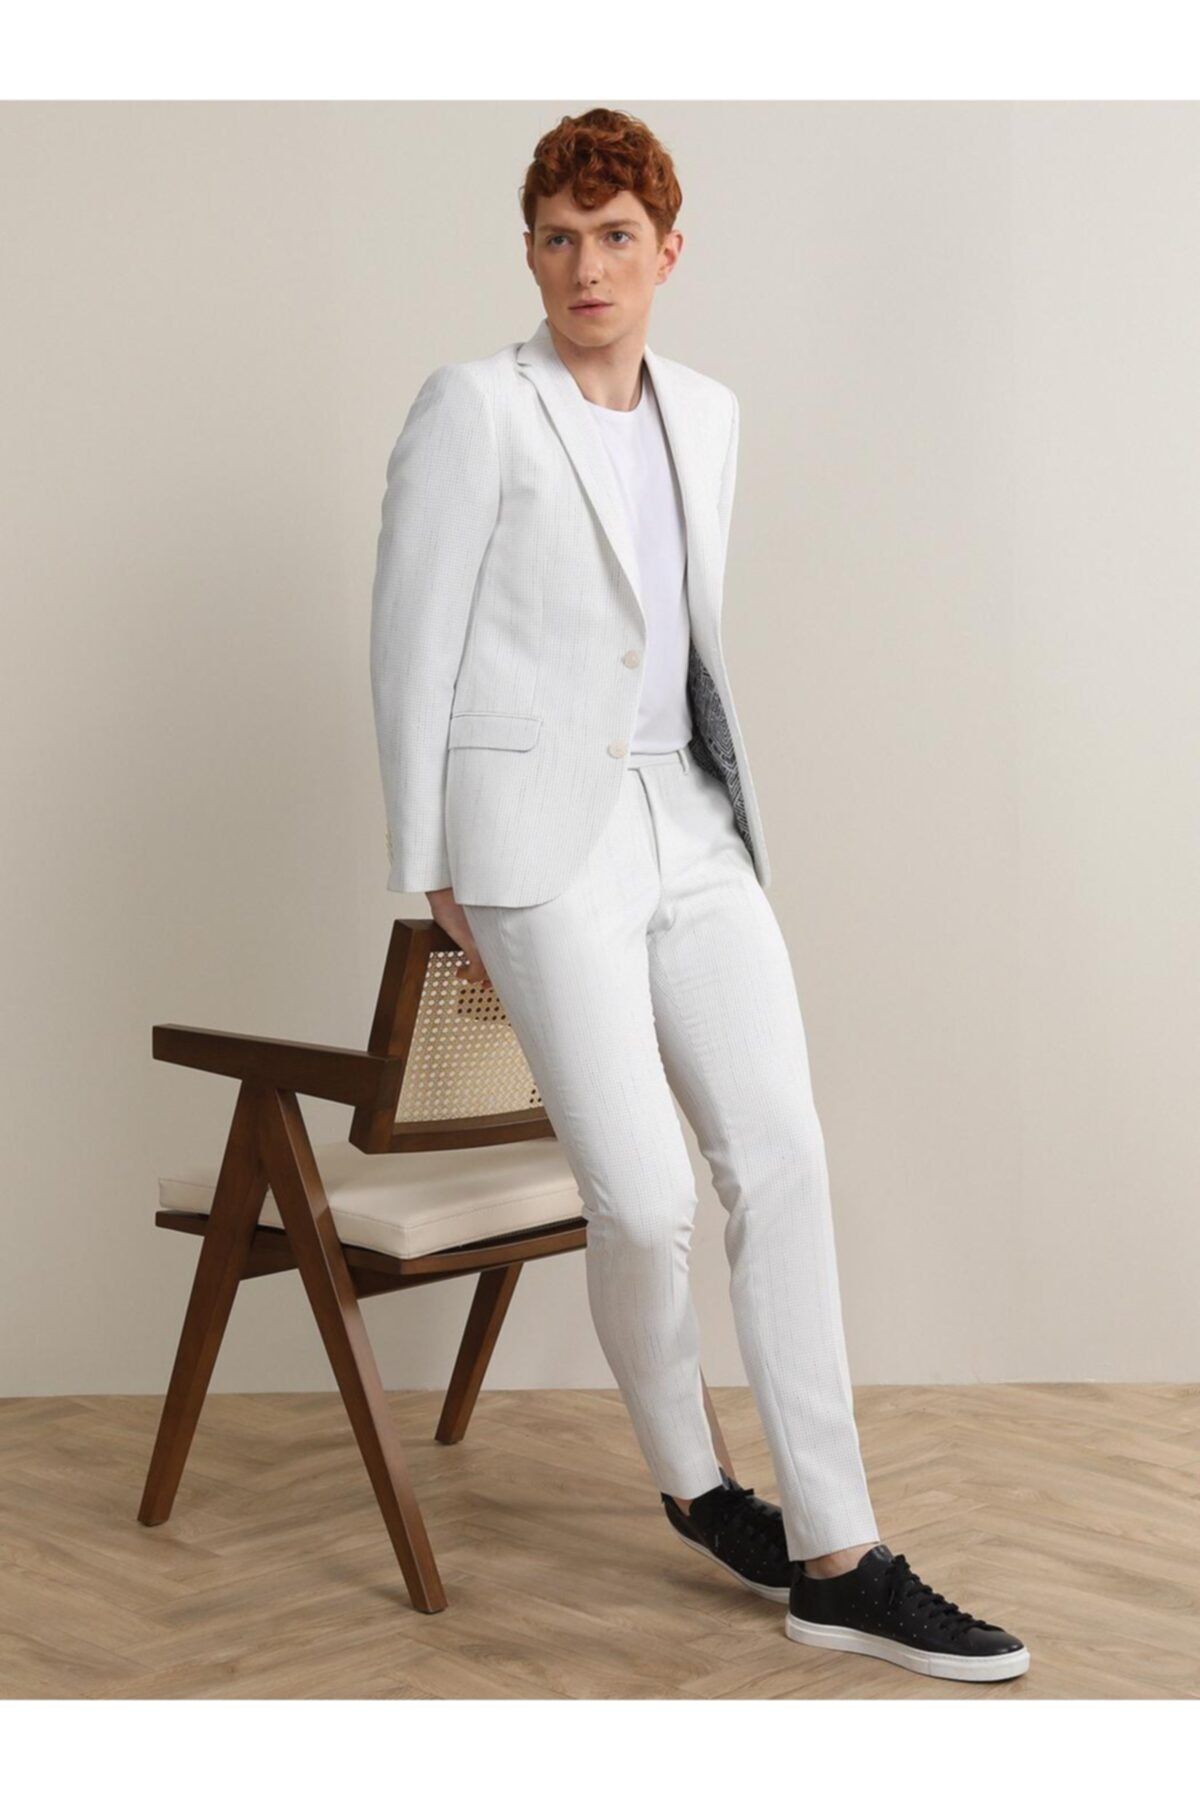 Kip Beyaz Çizgili Slim Fit Takım Elbise